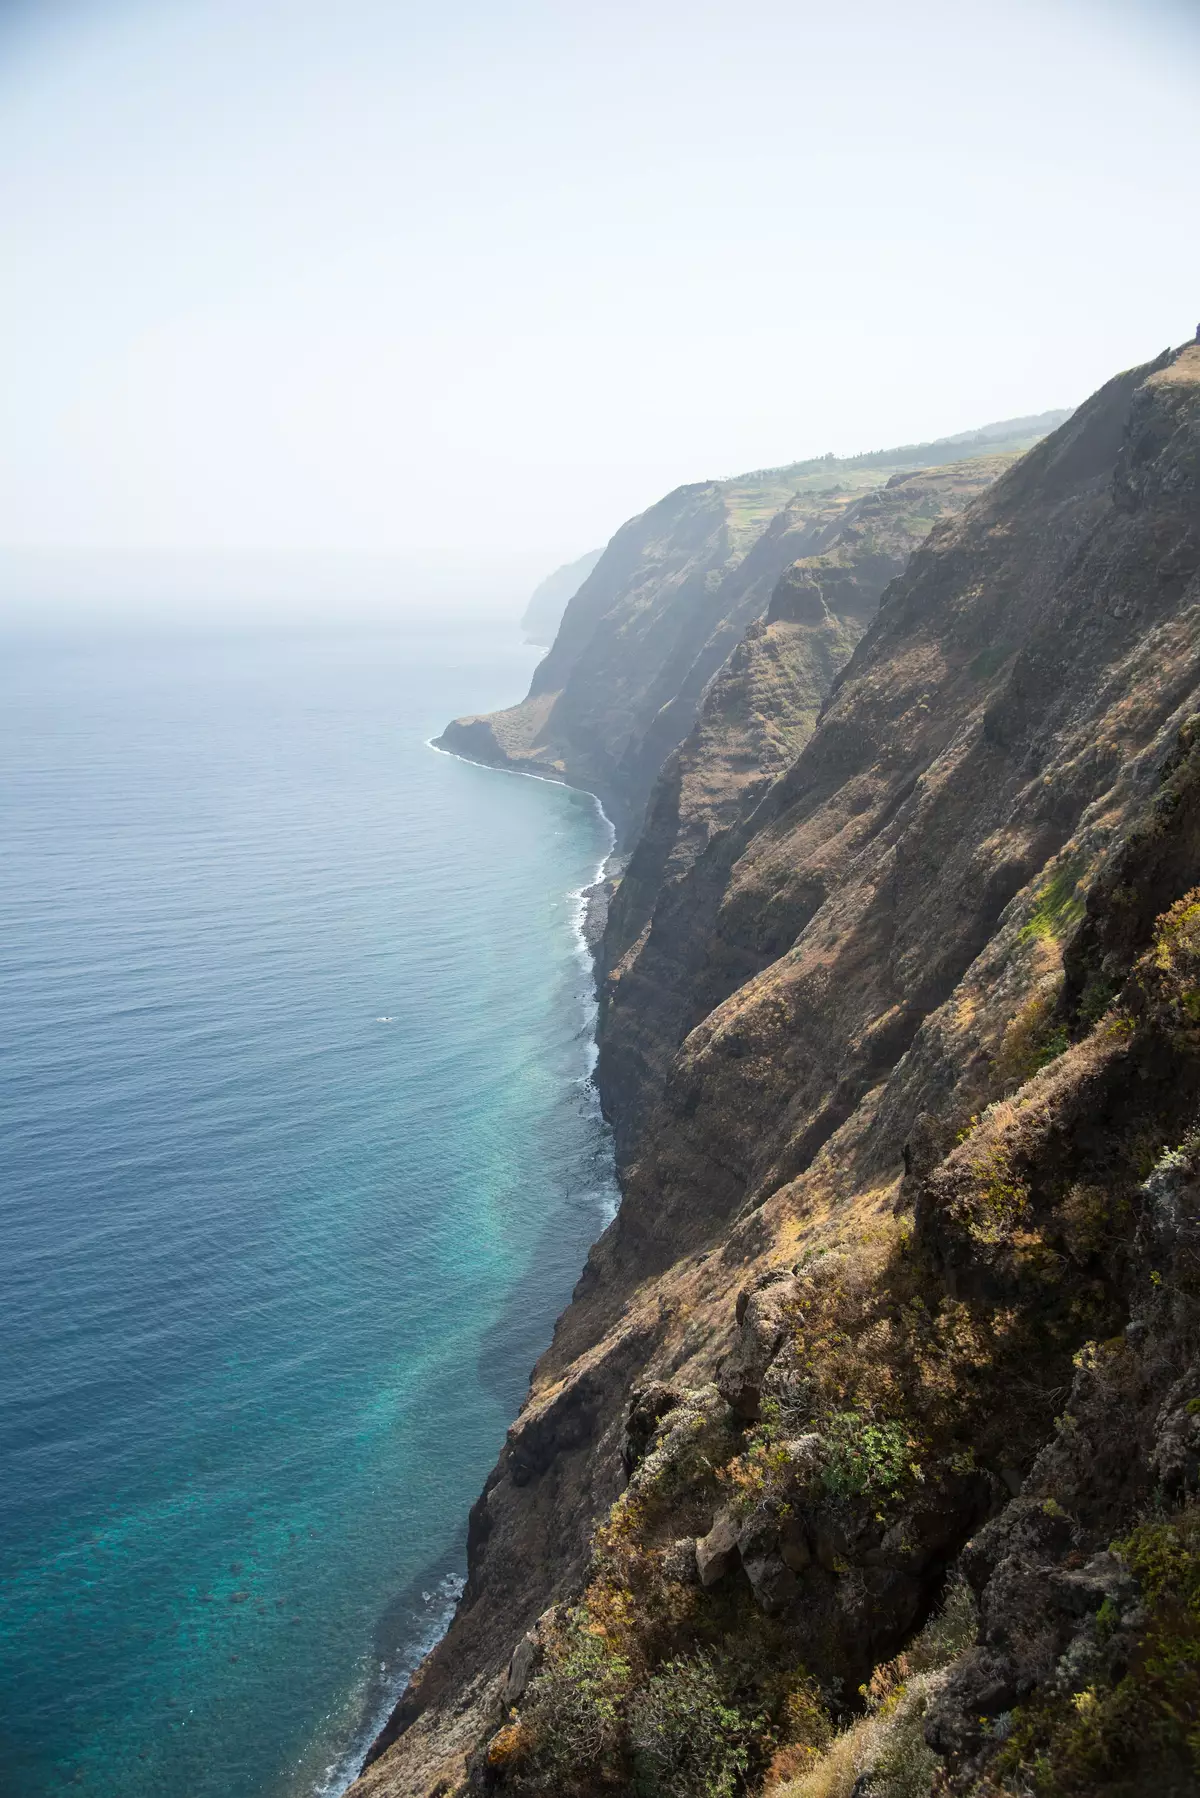 Cliffs of the Madeira Island